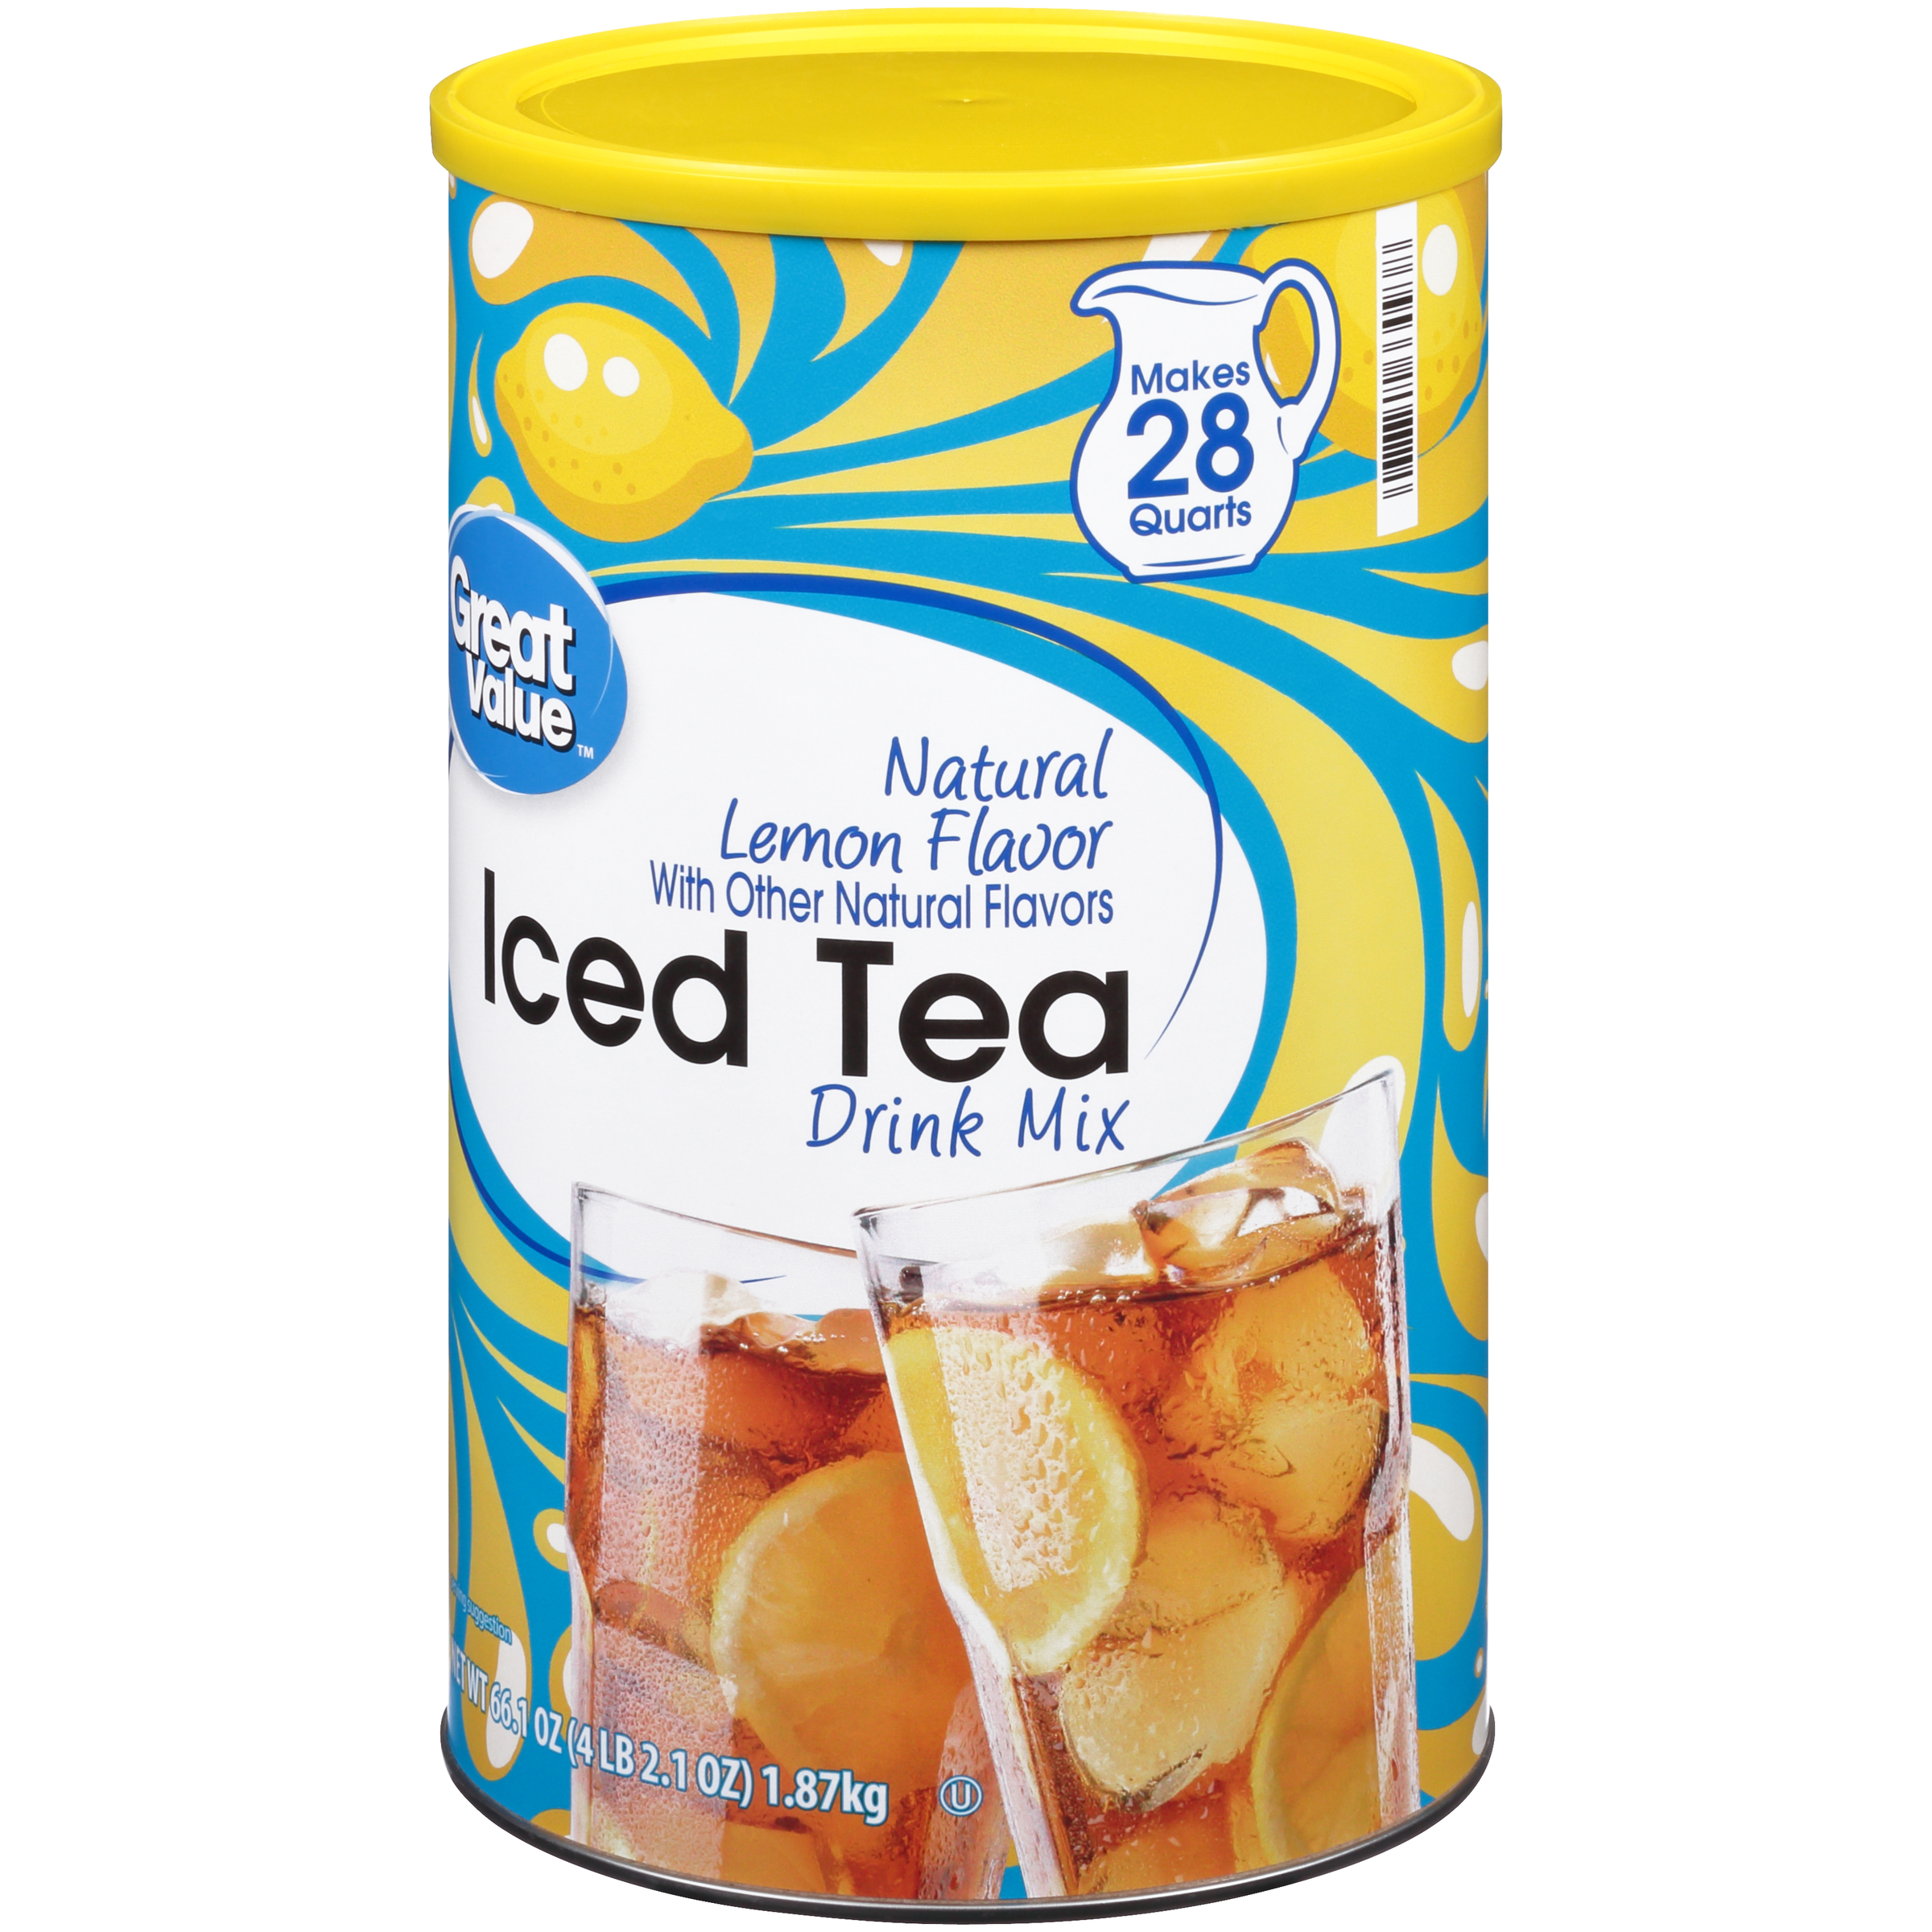 Great Value Natural Lemon Flavor Iced Tea Drink Mix, 66.1 oz - image 4 of 12